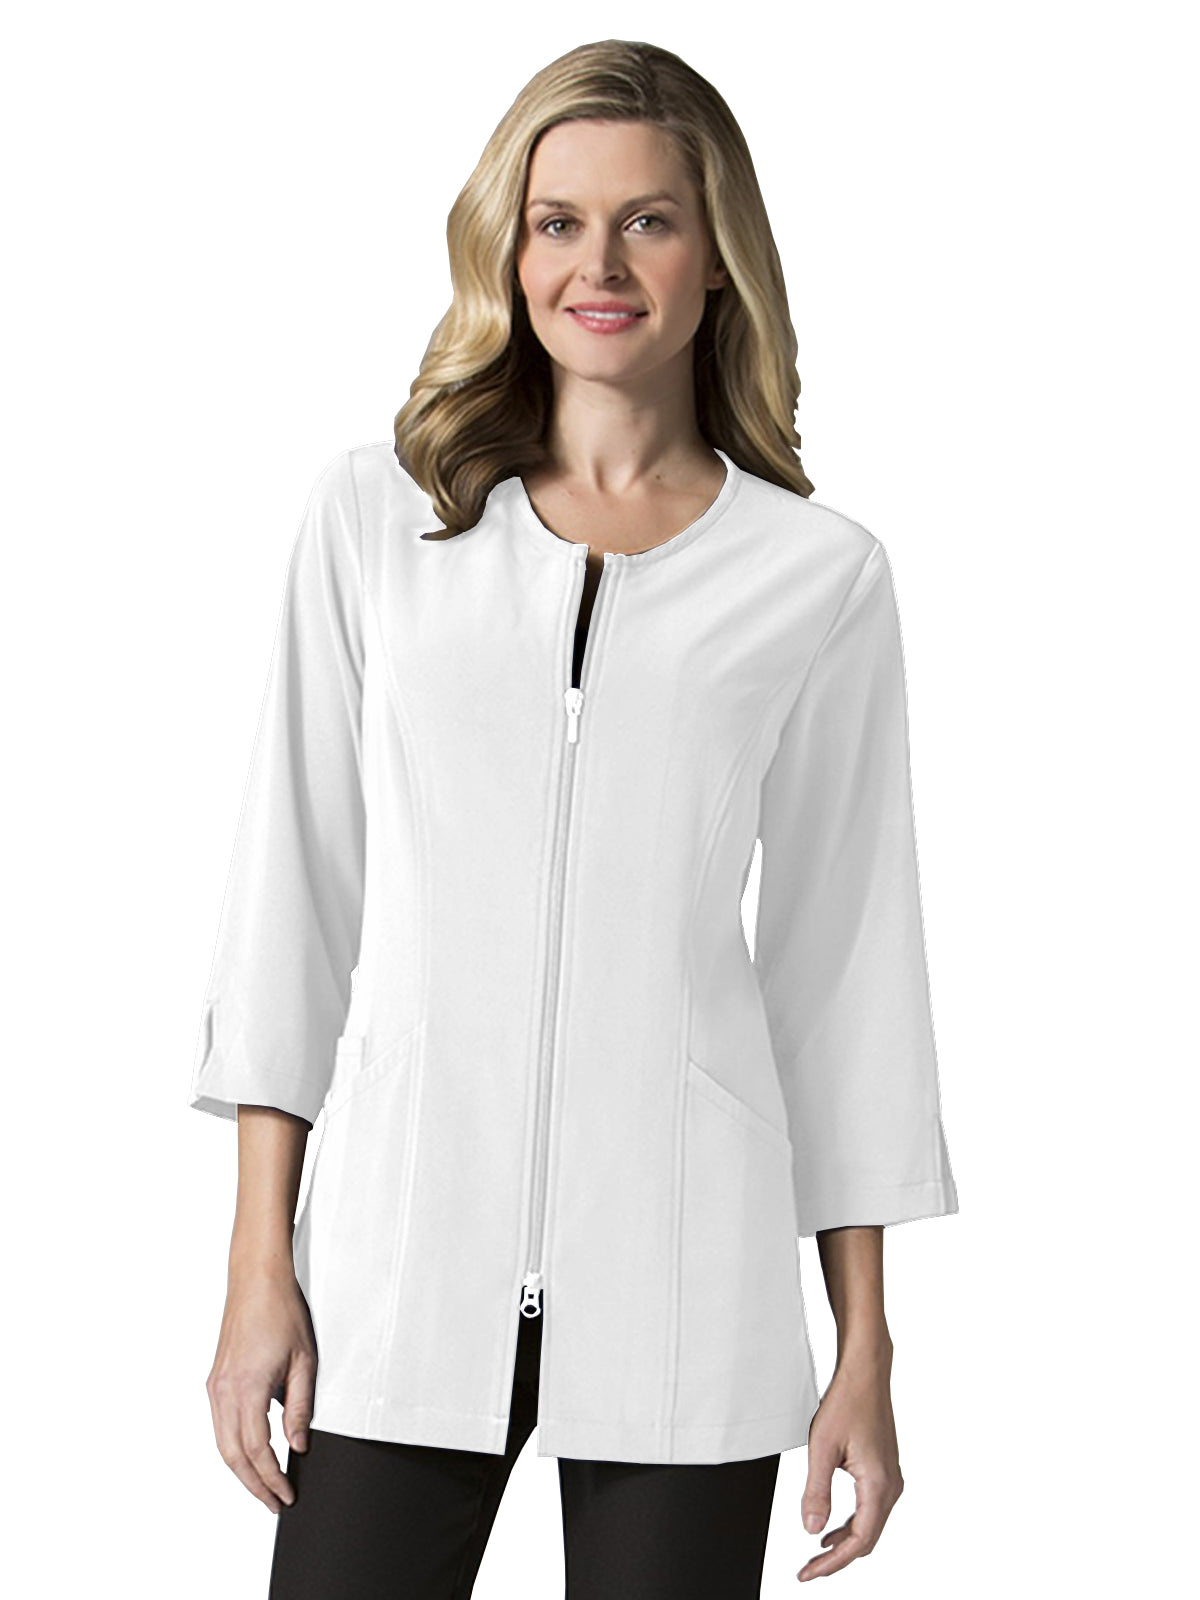 Women's 3/4 Sleeve Jacket - 8803 - White